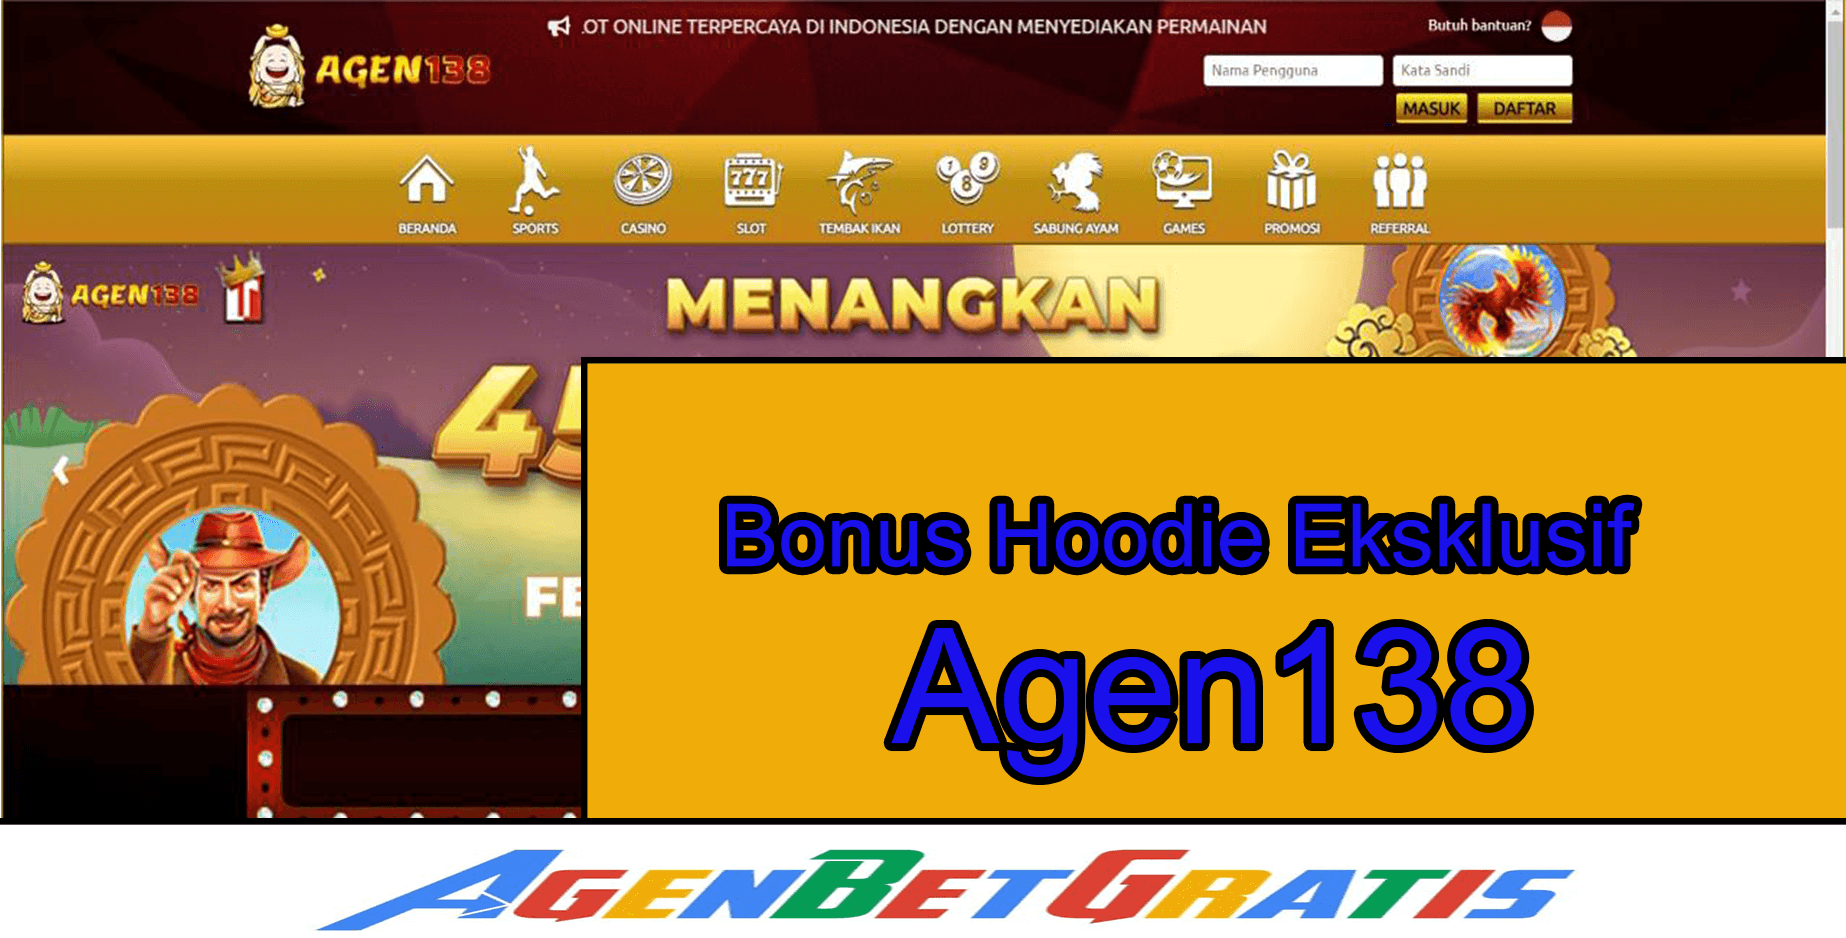 AGEN138 - Bonus Hoodie Eksklusif